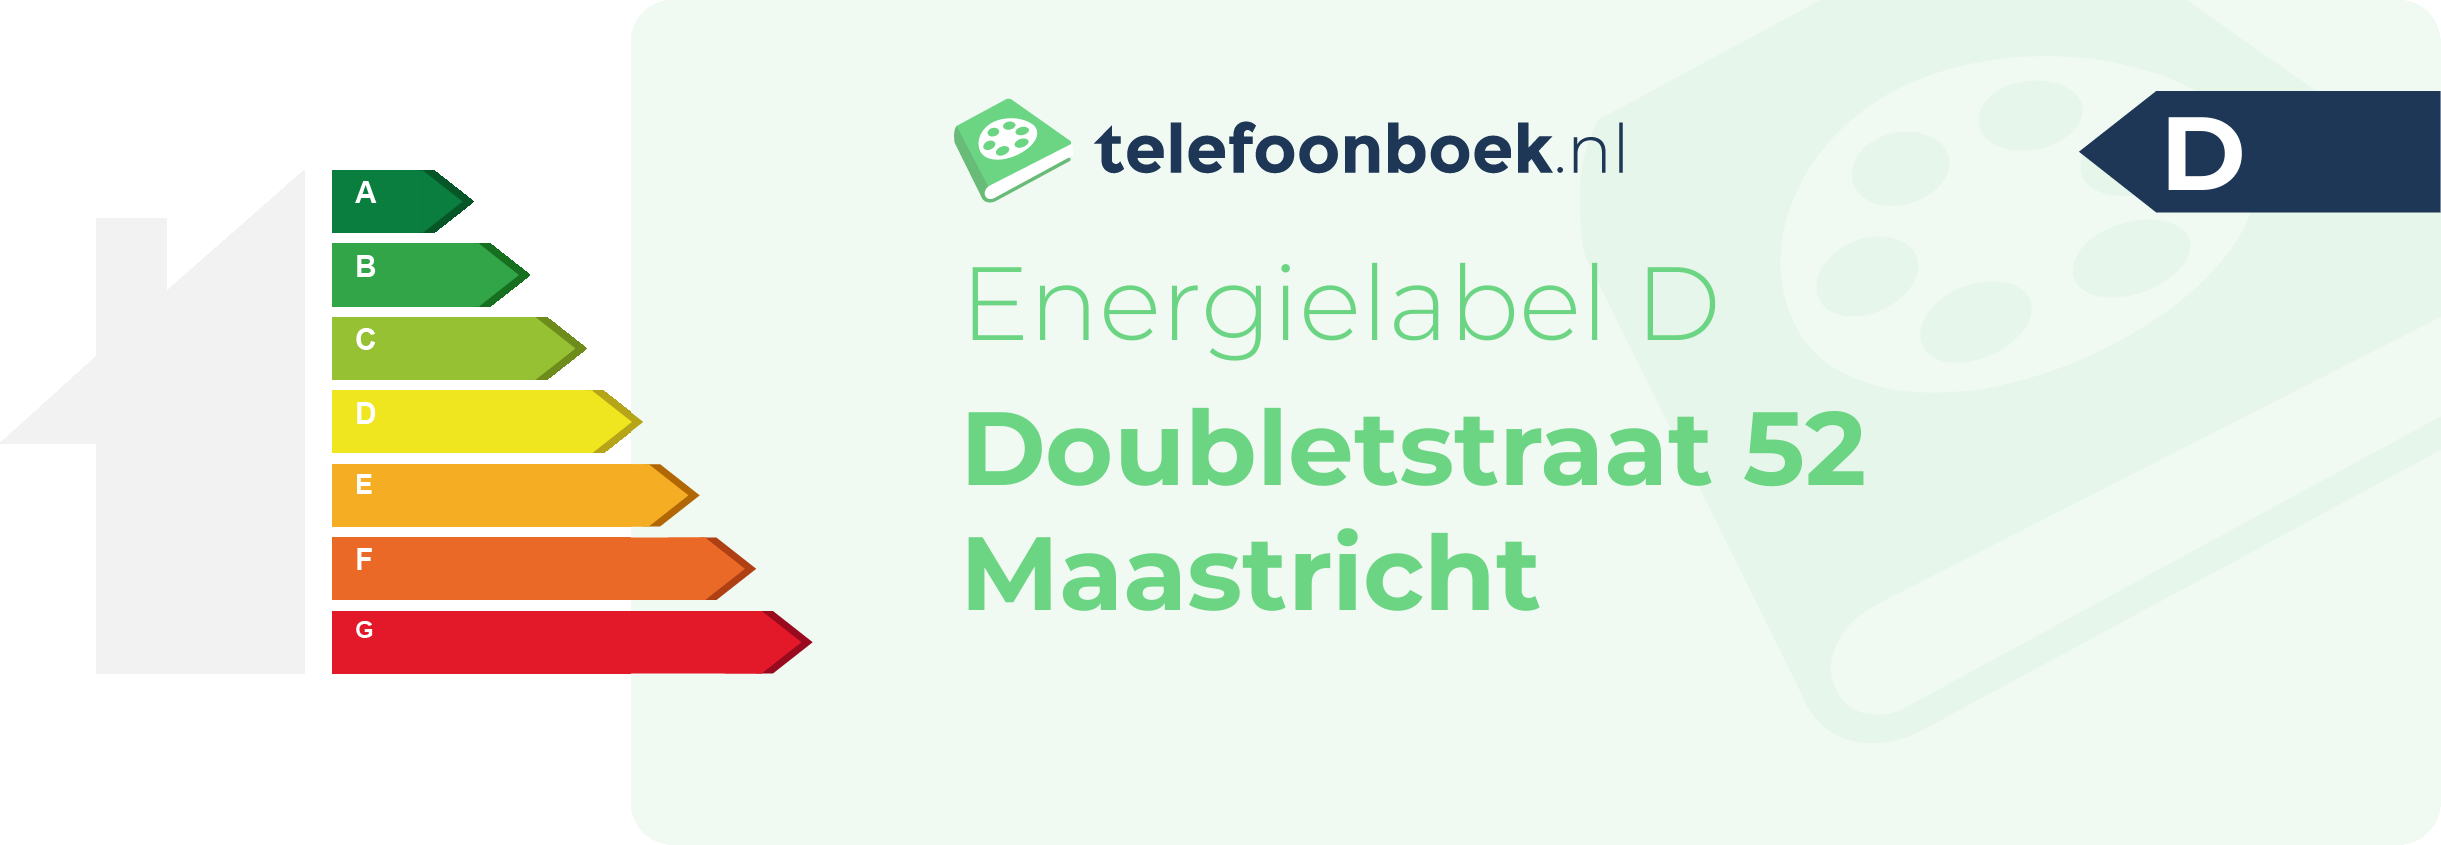 Energielabel Doubletstraat 52 Maastricht